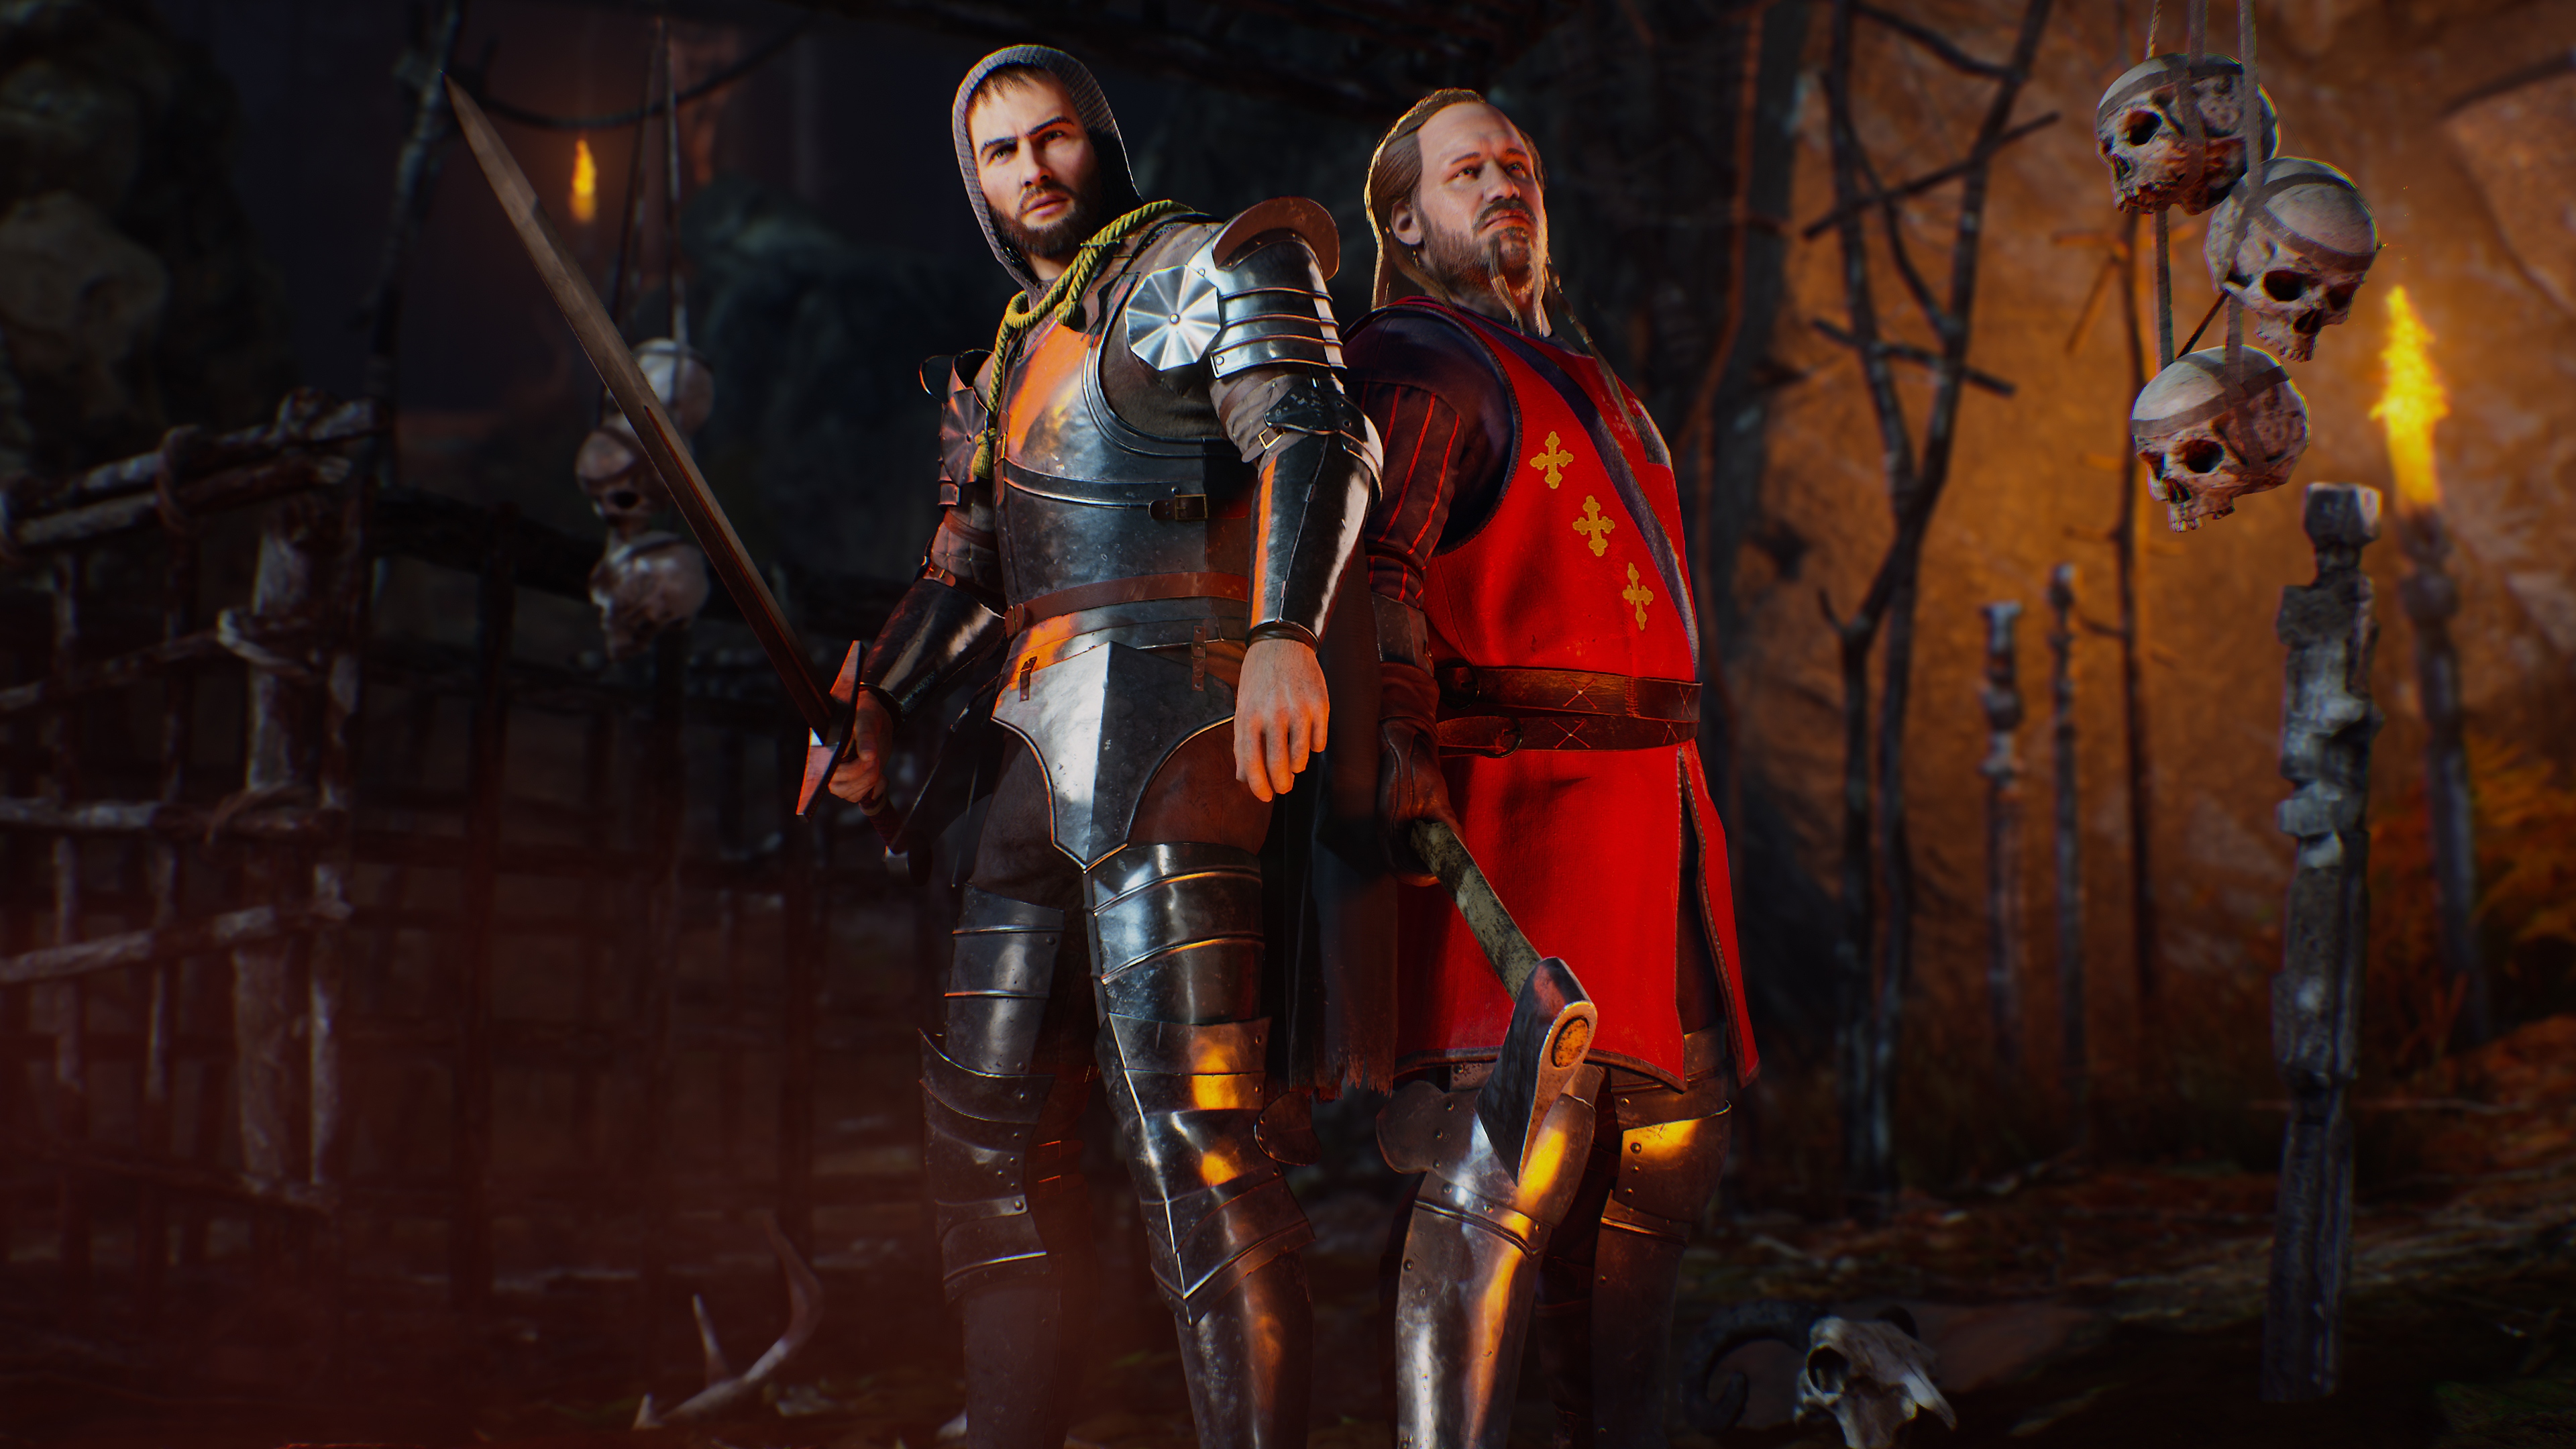 Evil Dead: The Game captura de pantalla mostrando a dos personajes con atuendos medievales